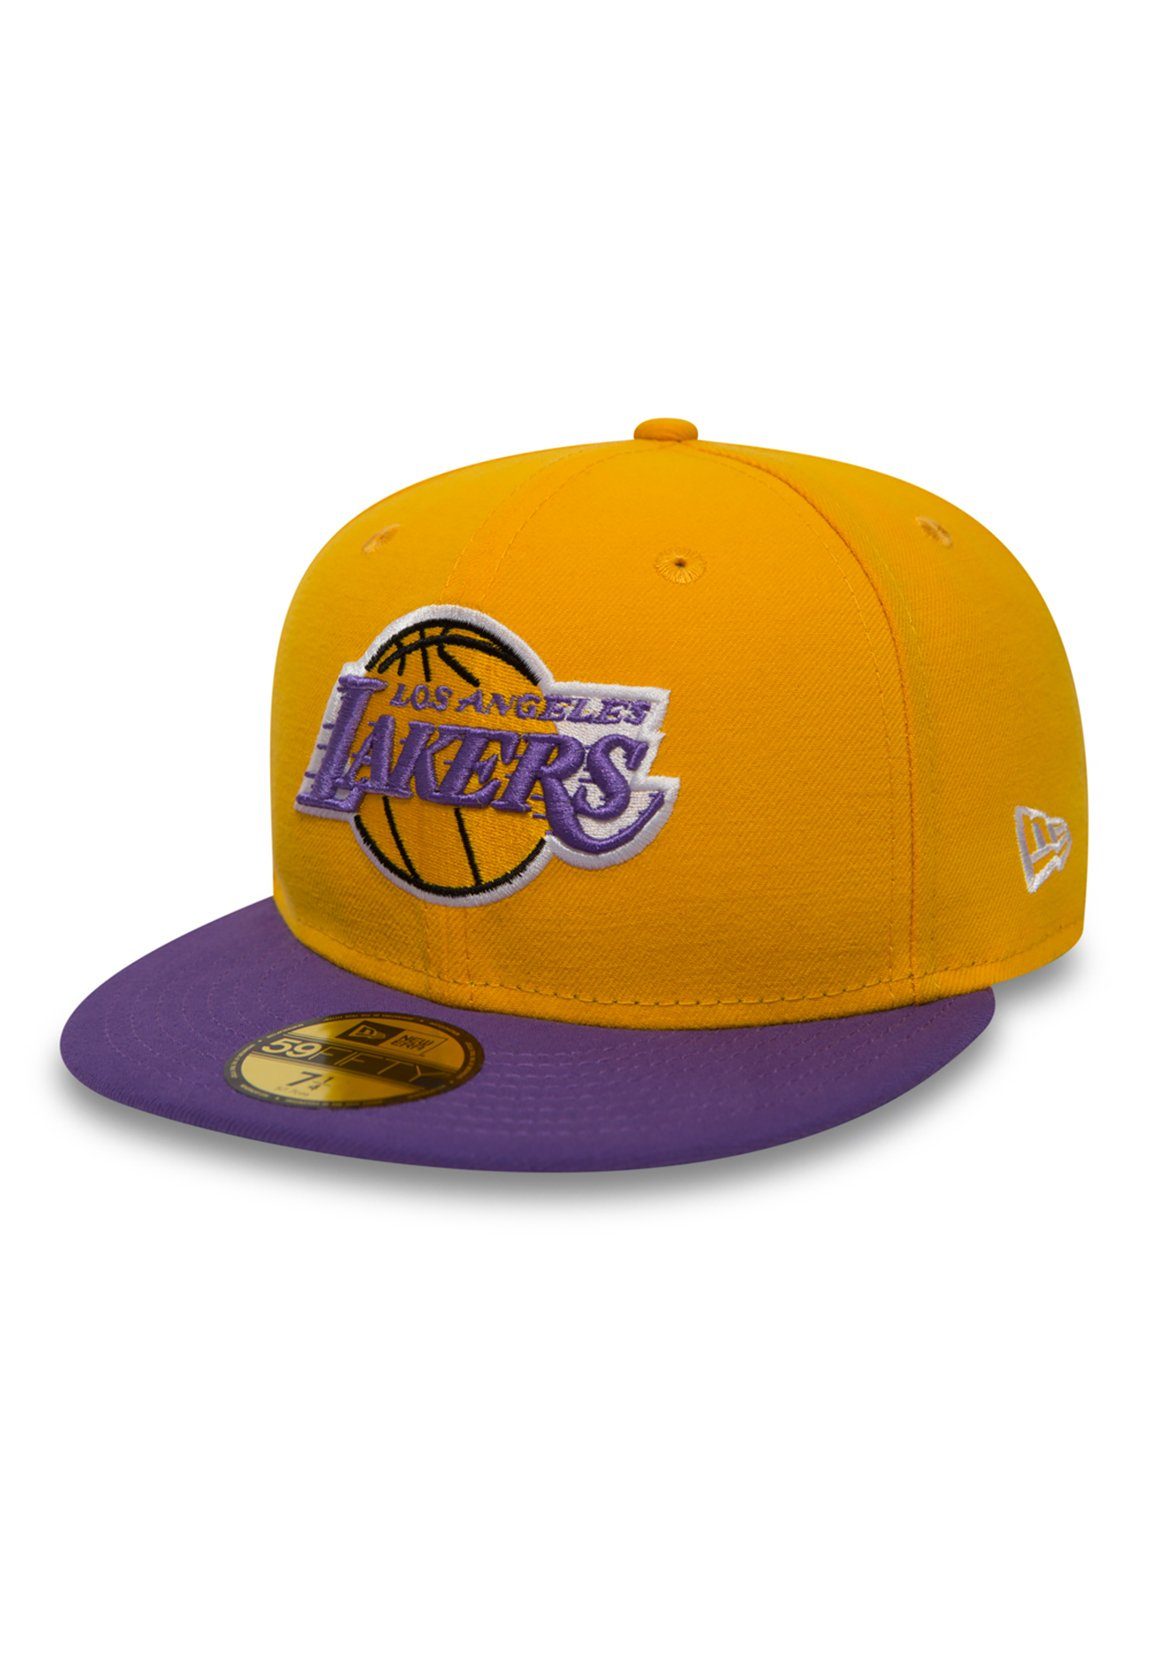 New Era Baseball Cap gelb Cap LA Era LAKERS New - - Yellow-Purple 59Fiftys